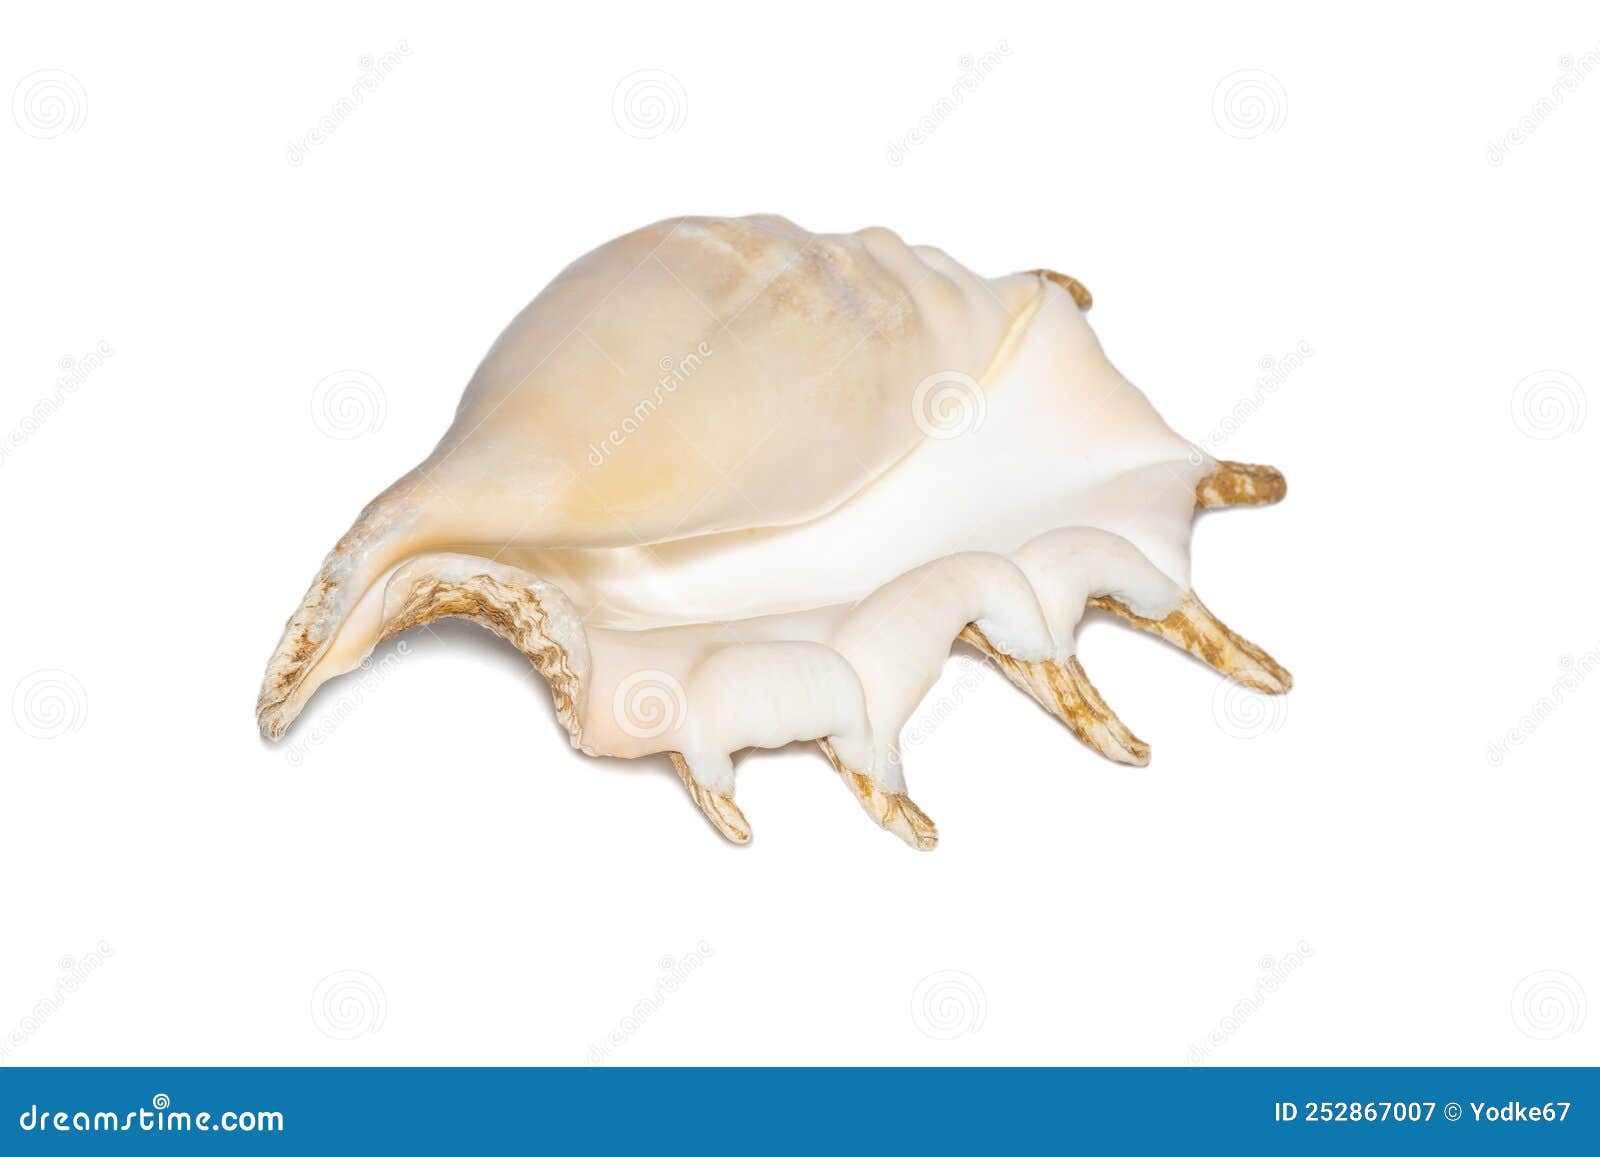 Image De Coquille De Conque D'araignée Sur Fond Blanc. Coquillages. Animaux  Sous-marins Image stock - Image du animaux, plage: 252867007